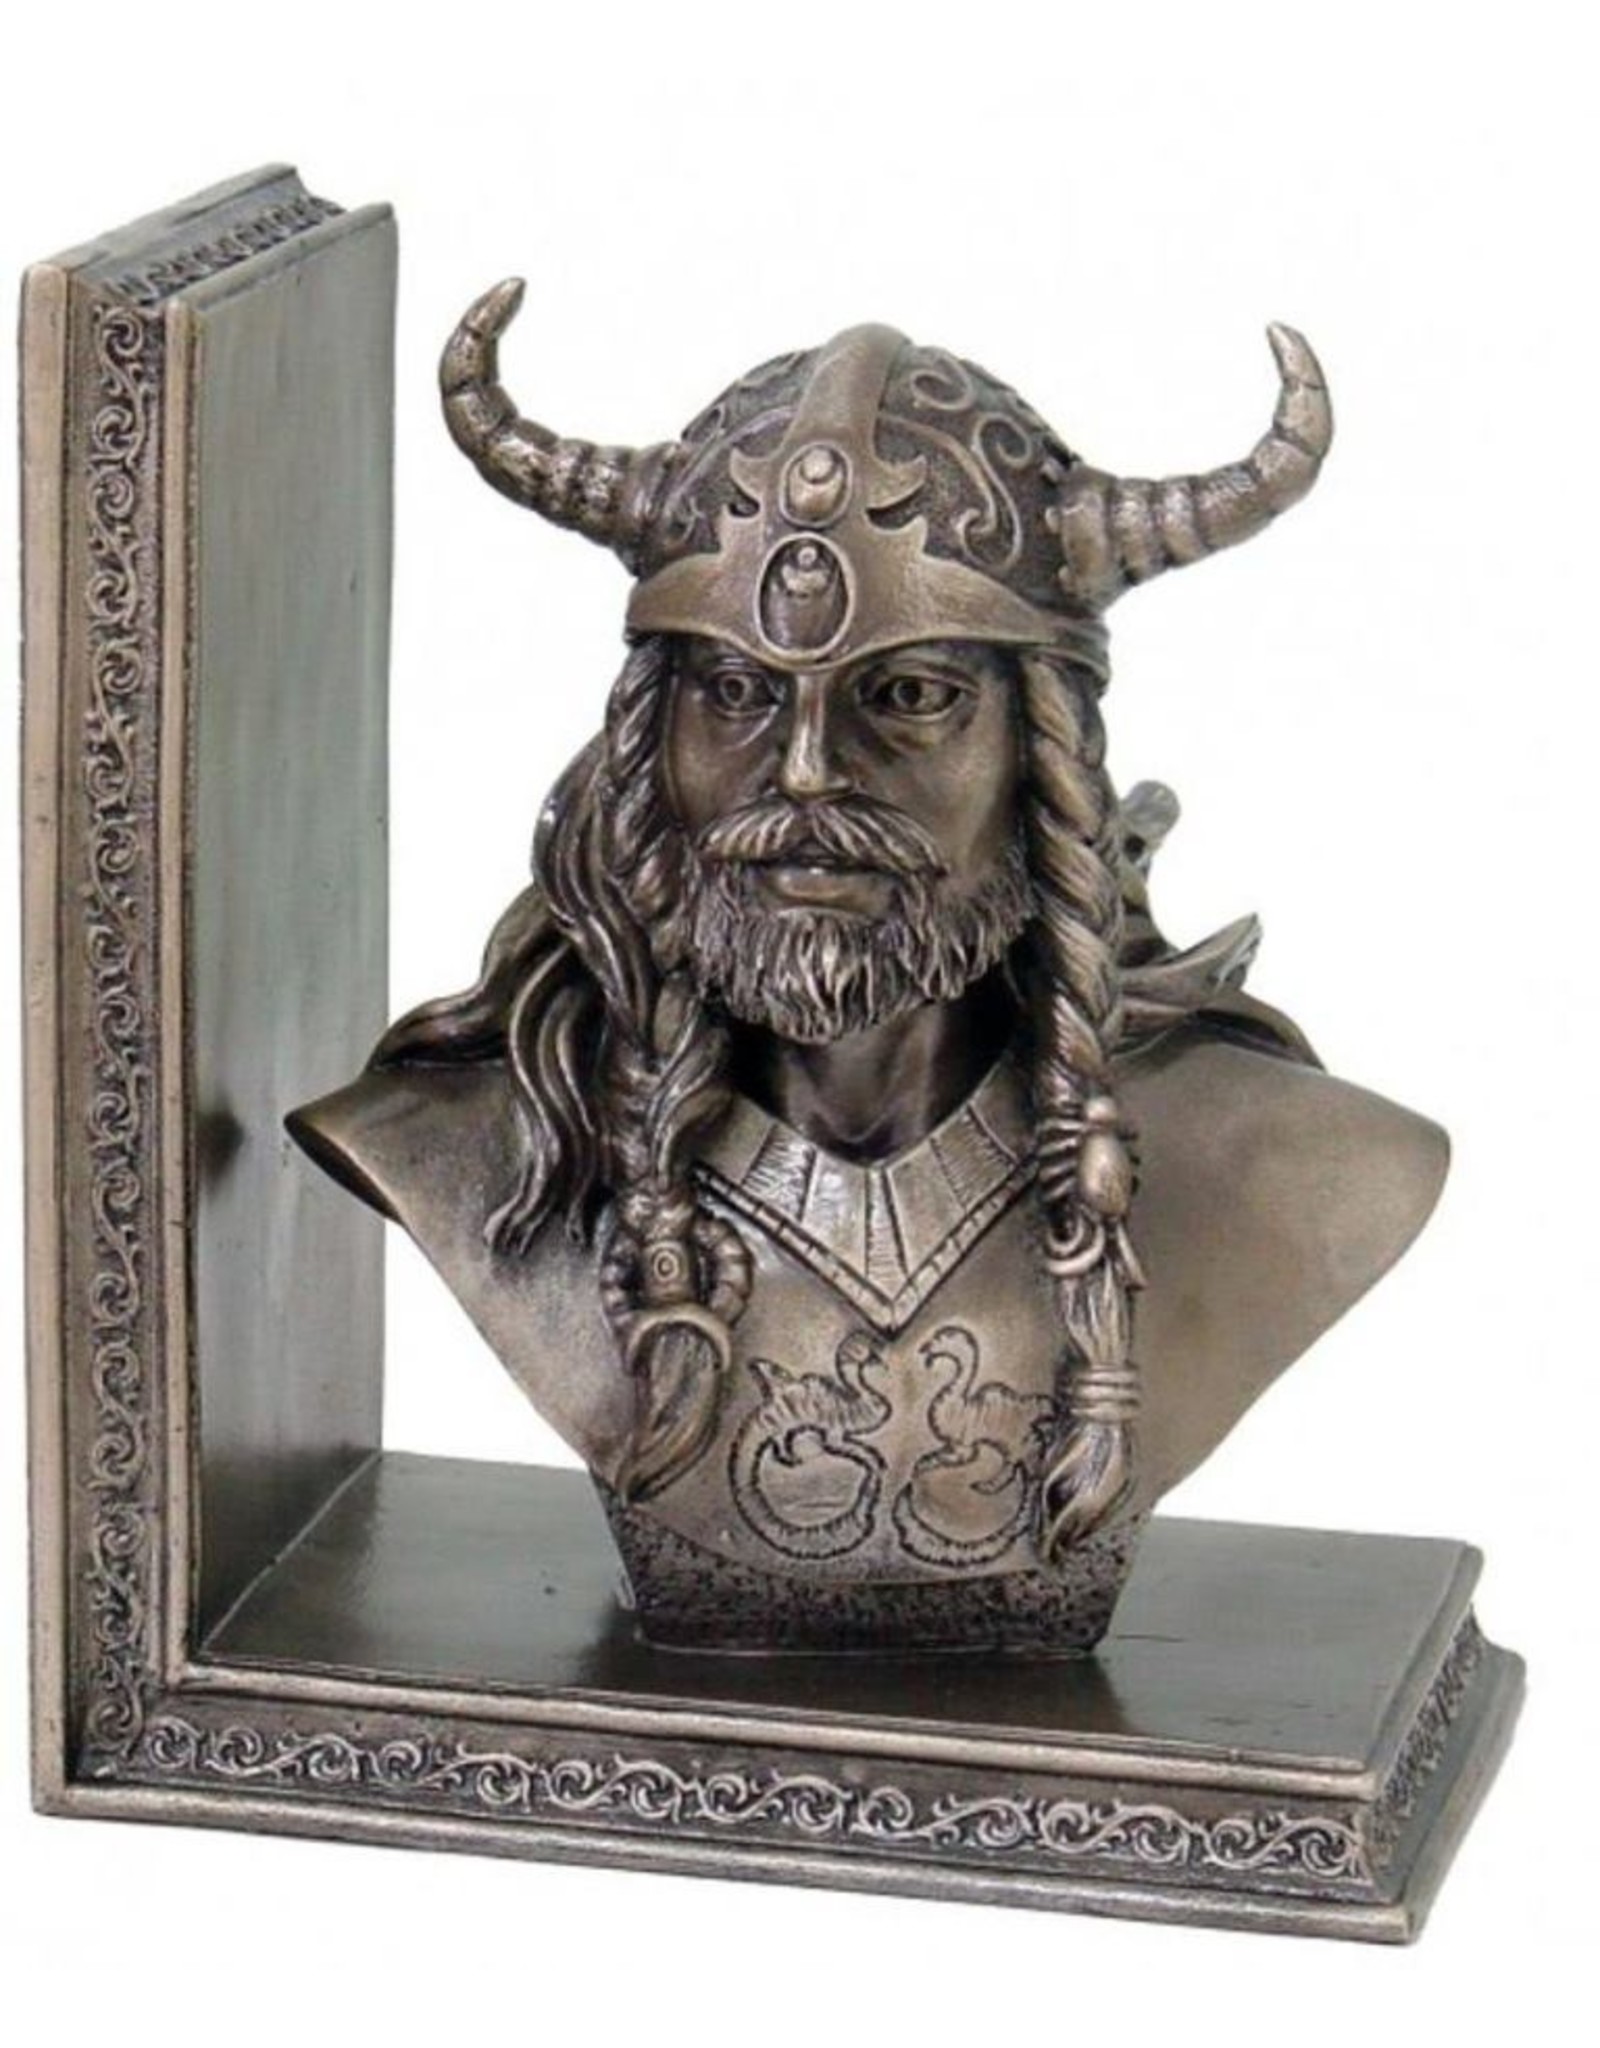 Veronese Design Giftware & Lifestyle - Viking Warriors Boekensteunen